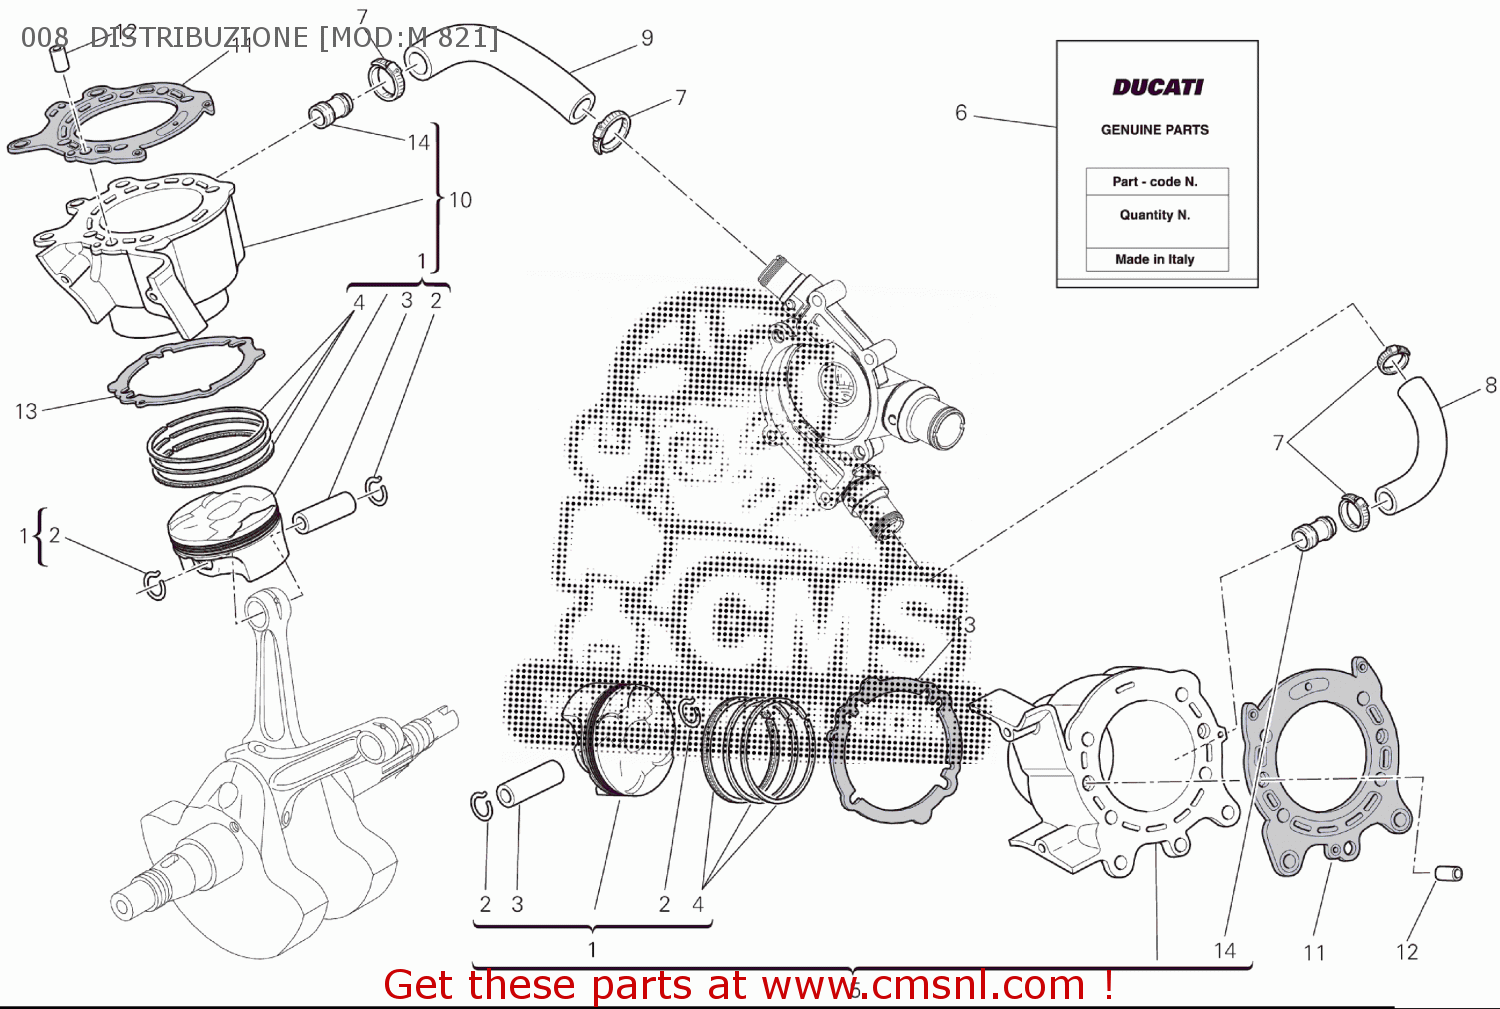 Ducati CIRCLIP, PISTON PIN 12111741B